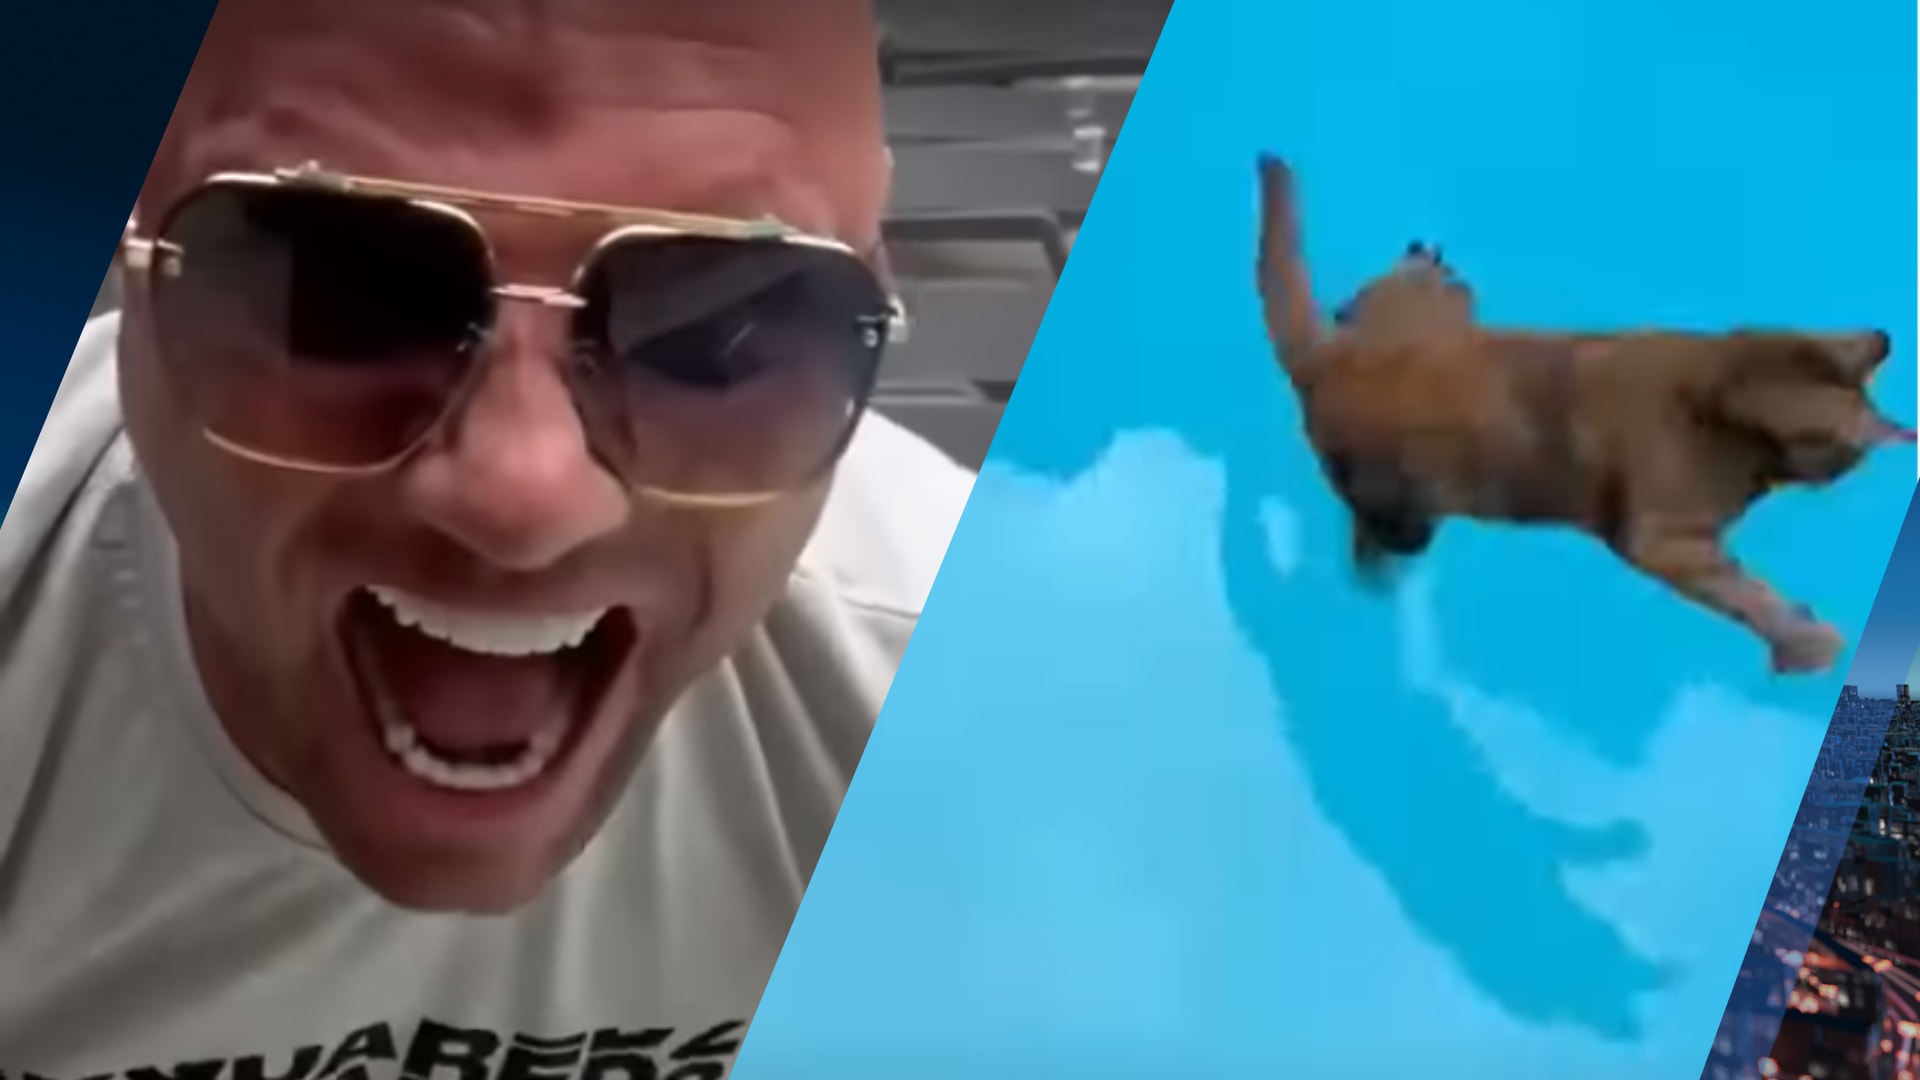 Woede om vlogger Alex Soze die kat in zwembad gooit: 'Hoe triest kun je zijn?'